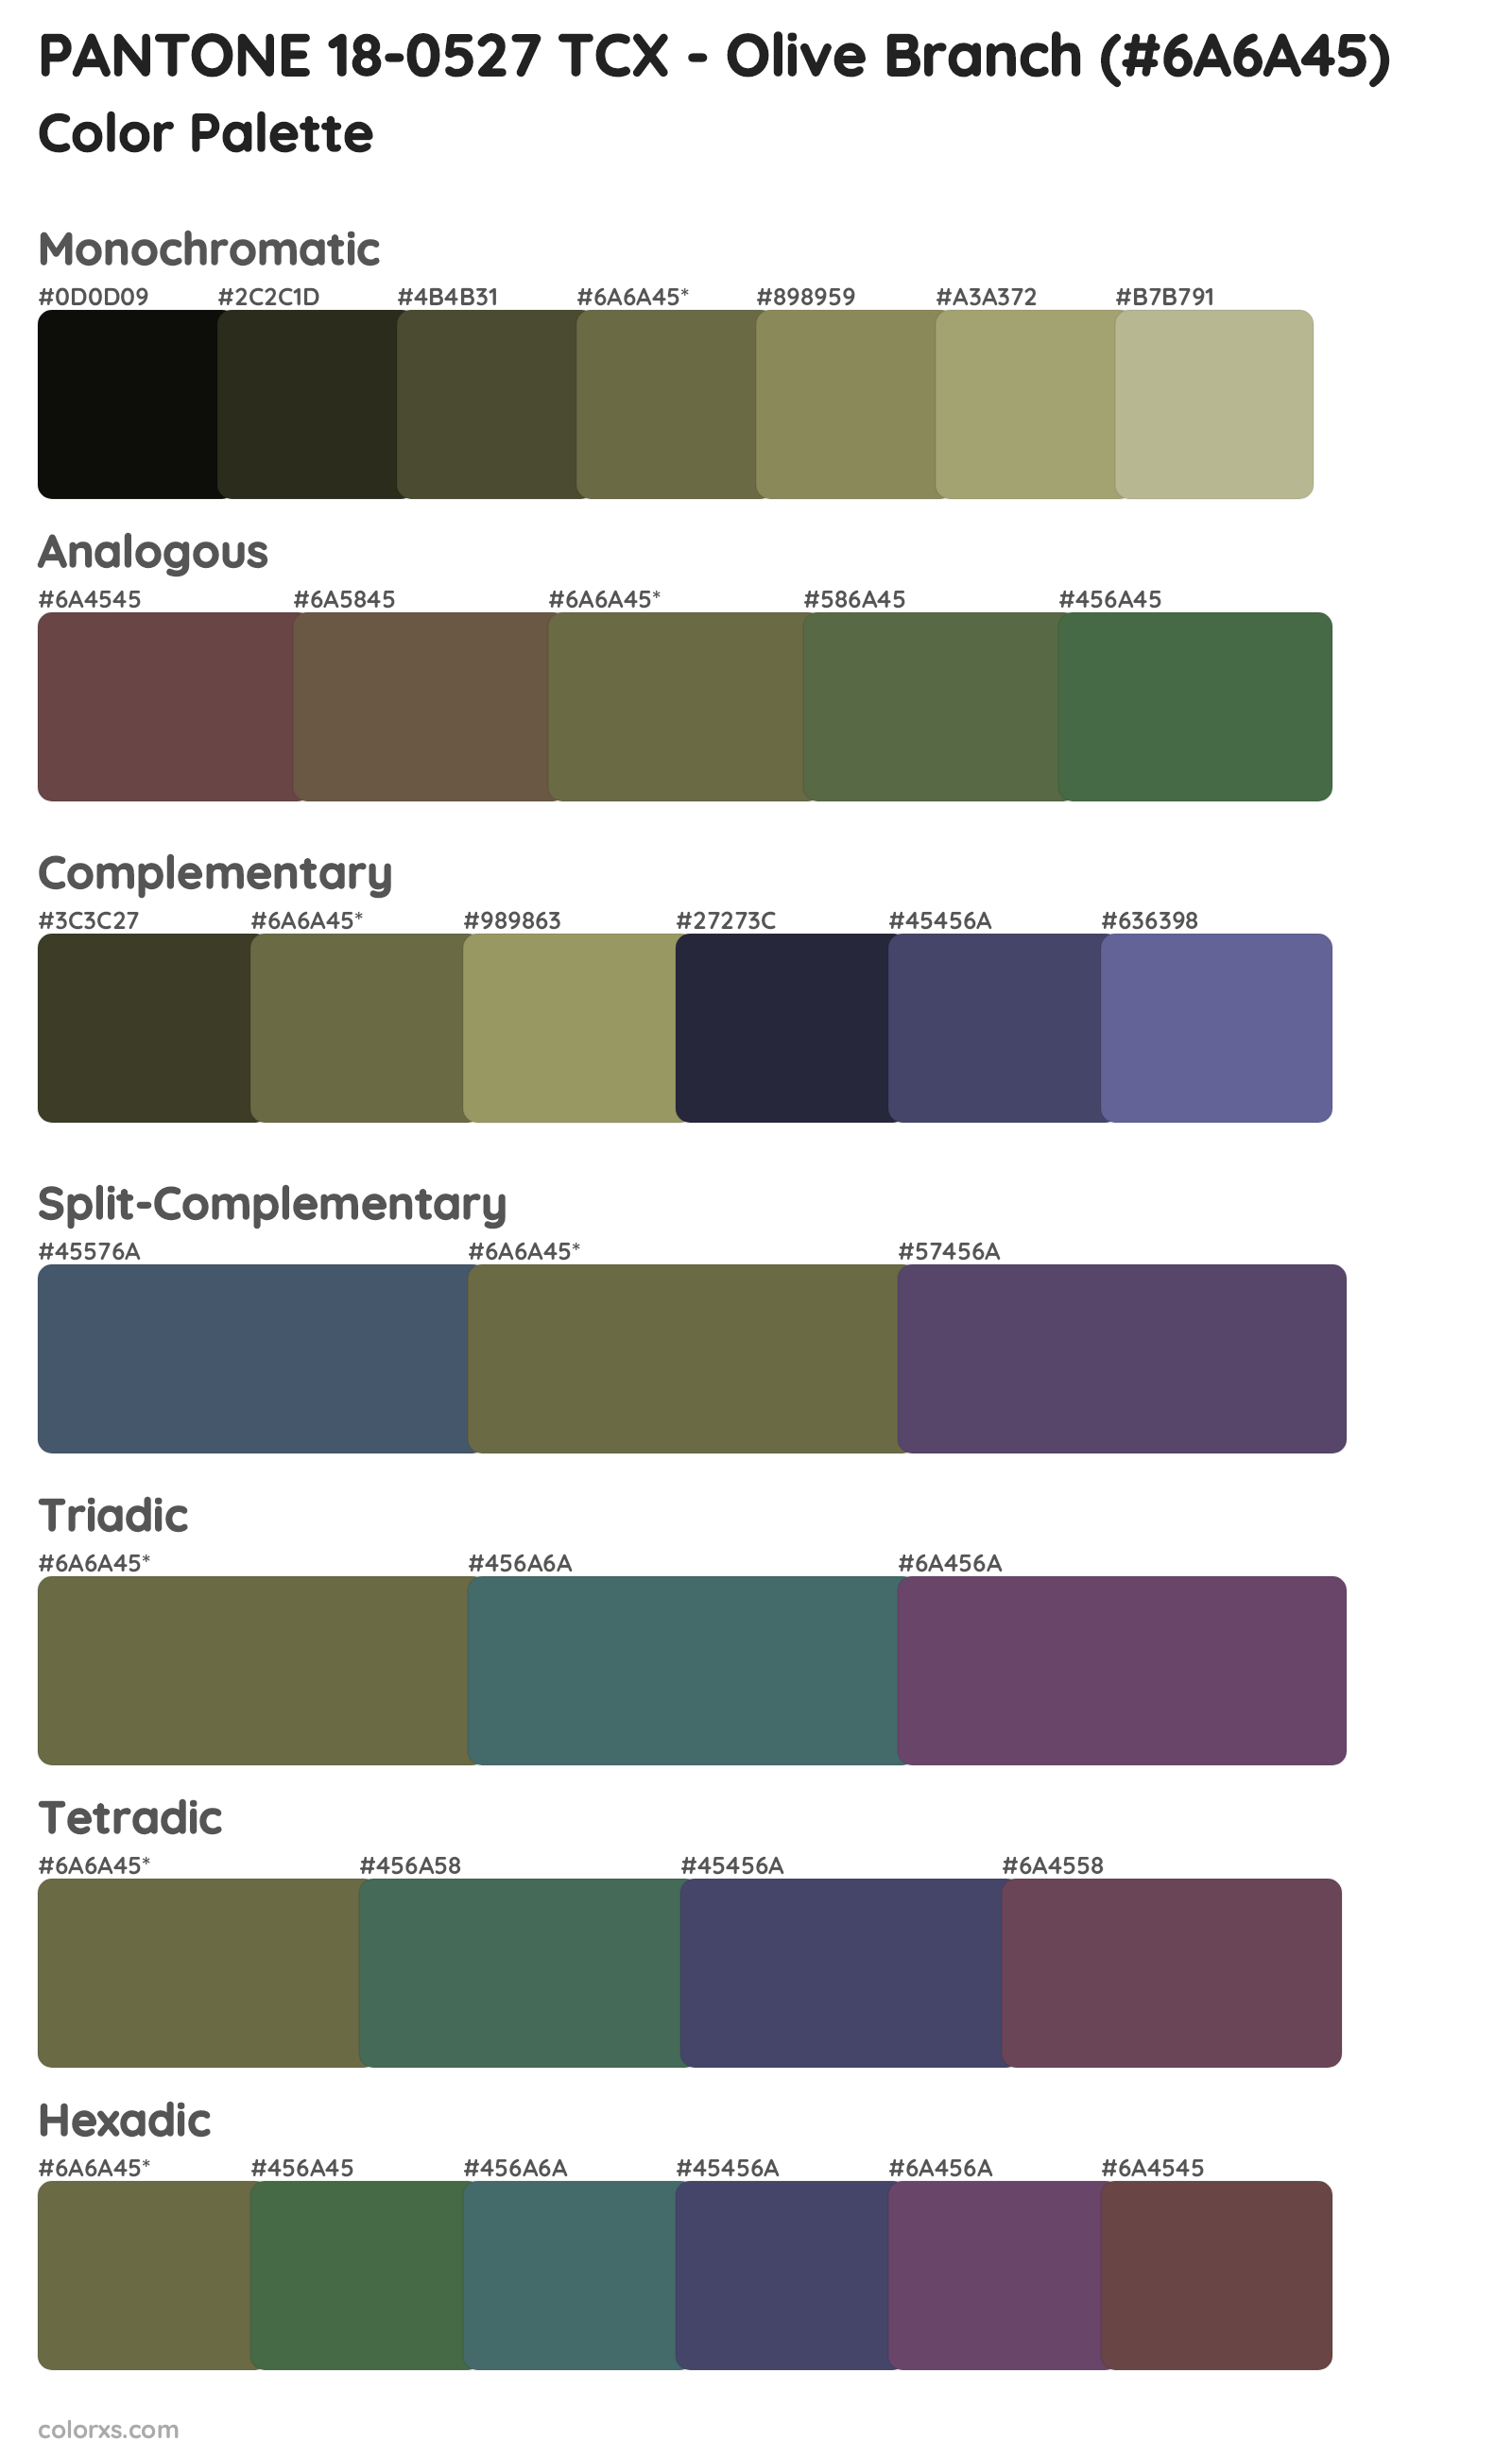 PANTONE 18-0527 TCX - Olive Branch Color Scheme Palettes